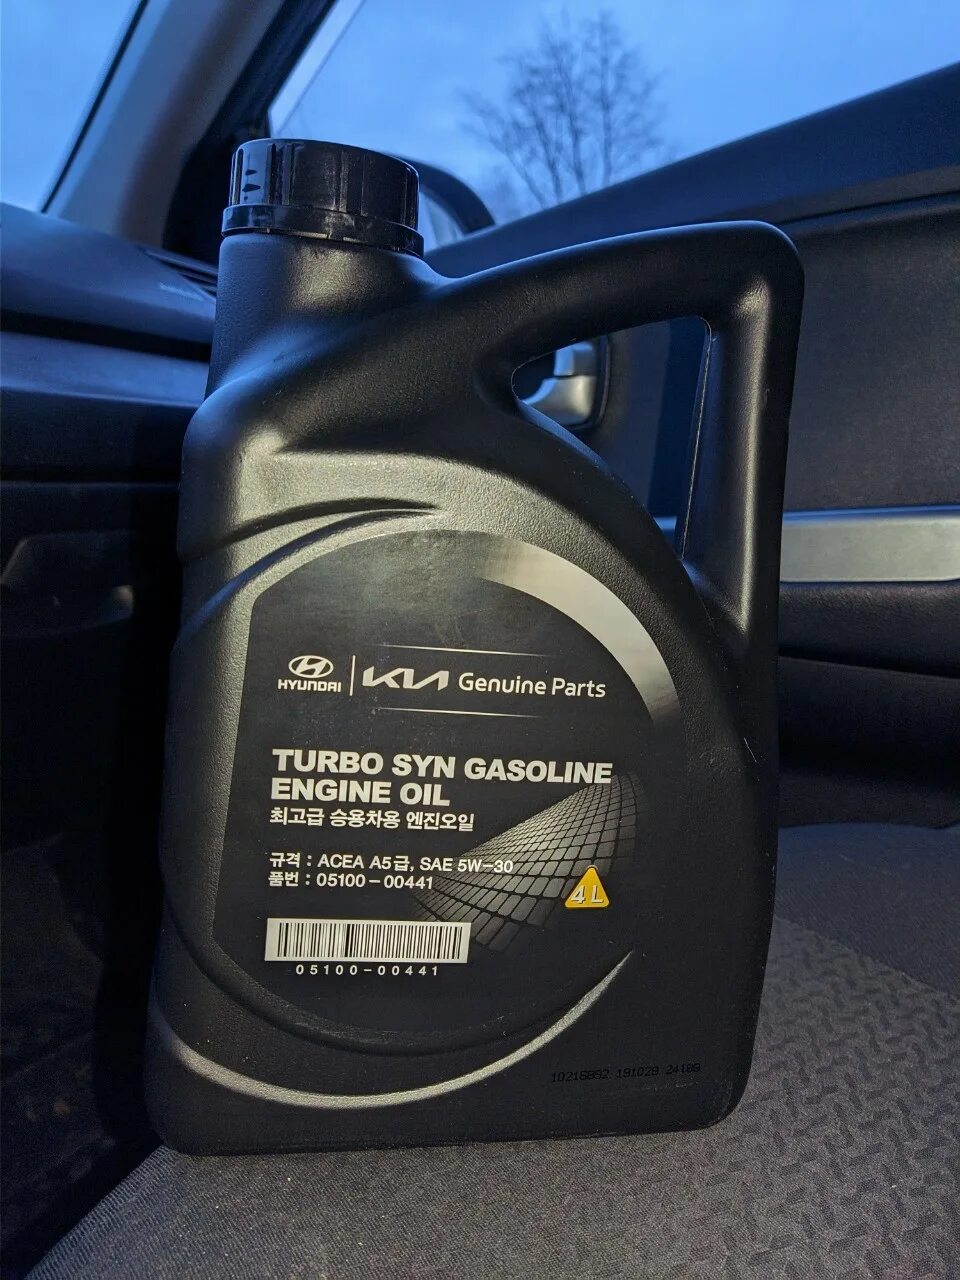 Hyundai Turbo gasoline 5w-30. Hyundai Turbo syn gasoline 5w-30. Масло Hyundai 5w30 Turbo syn. Kia Turbo syn 5w30.